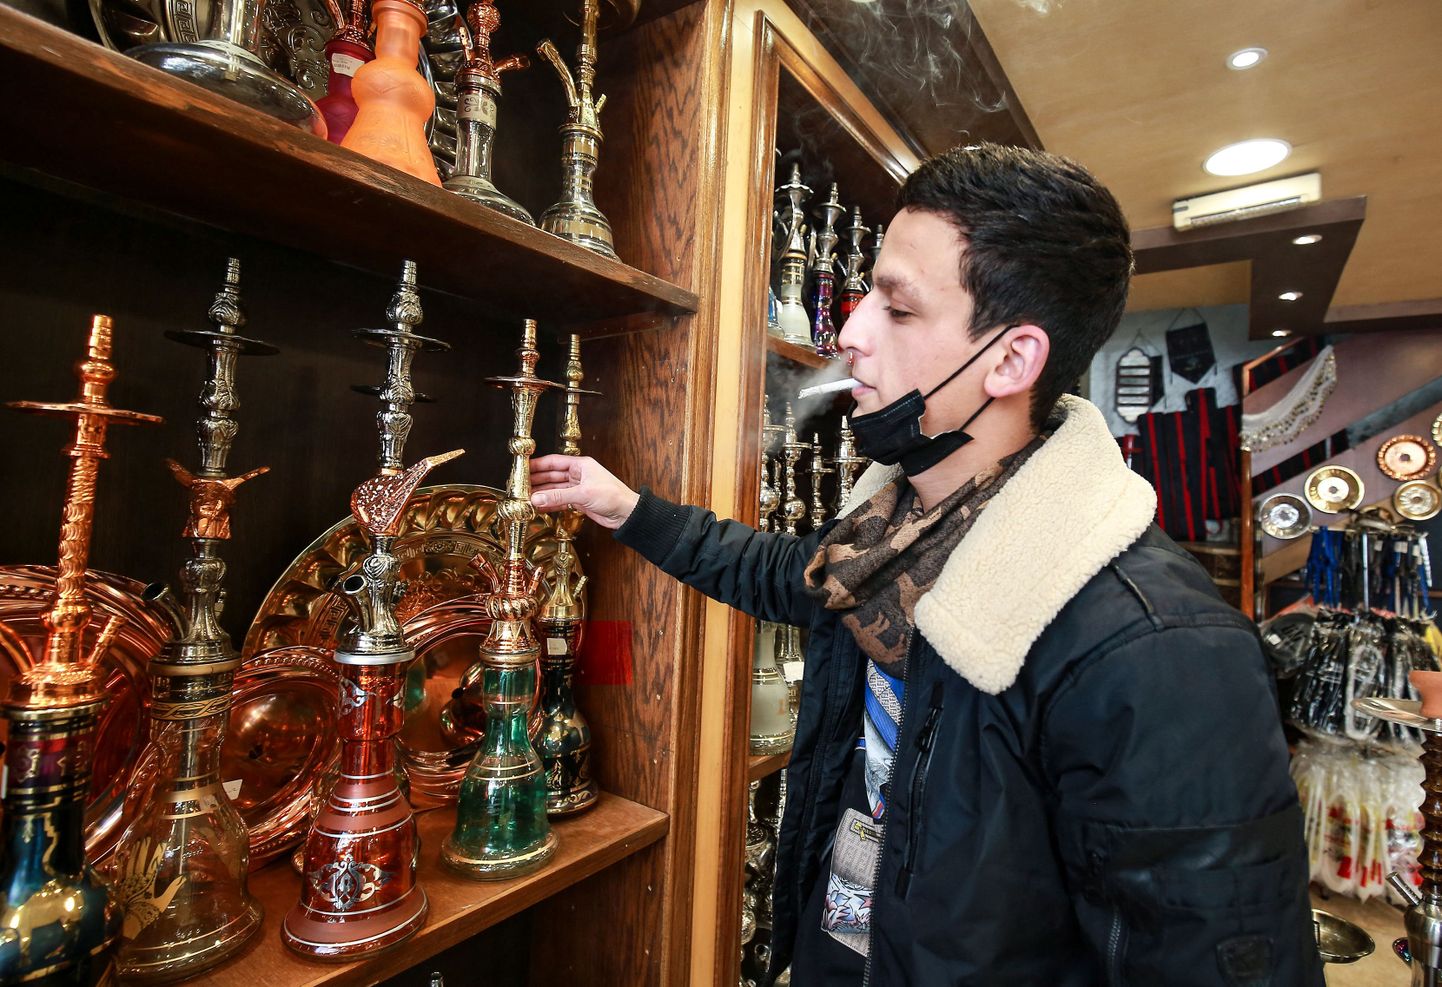 24-aastane Mounir Shana töötab vesipiipe müüvas kaupluses ning suitsetab ühe sigareti teise järel ka tööpostil olles.